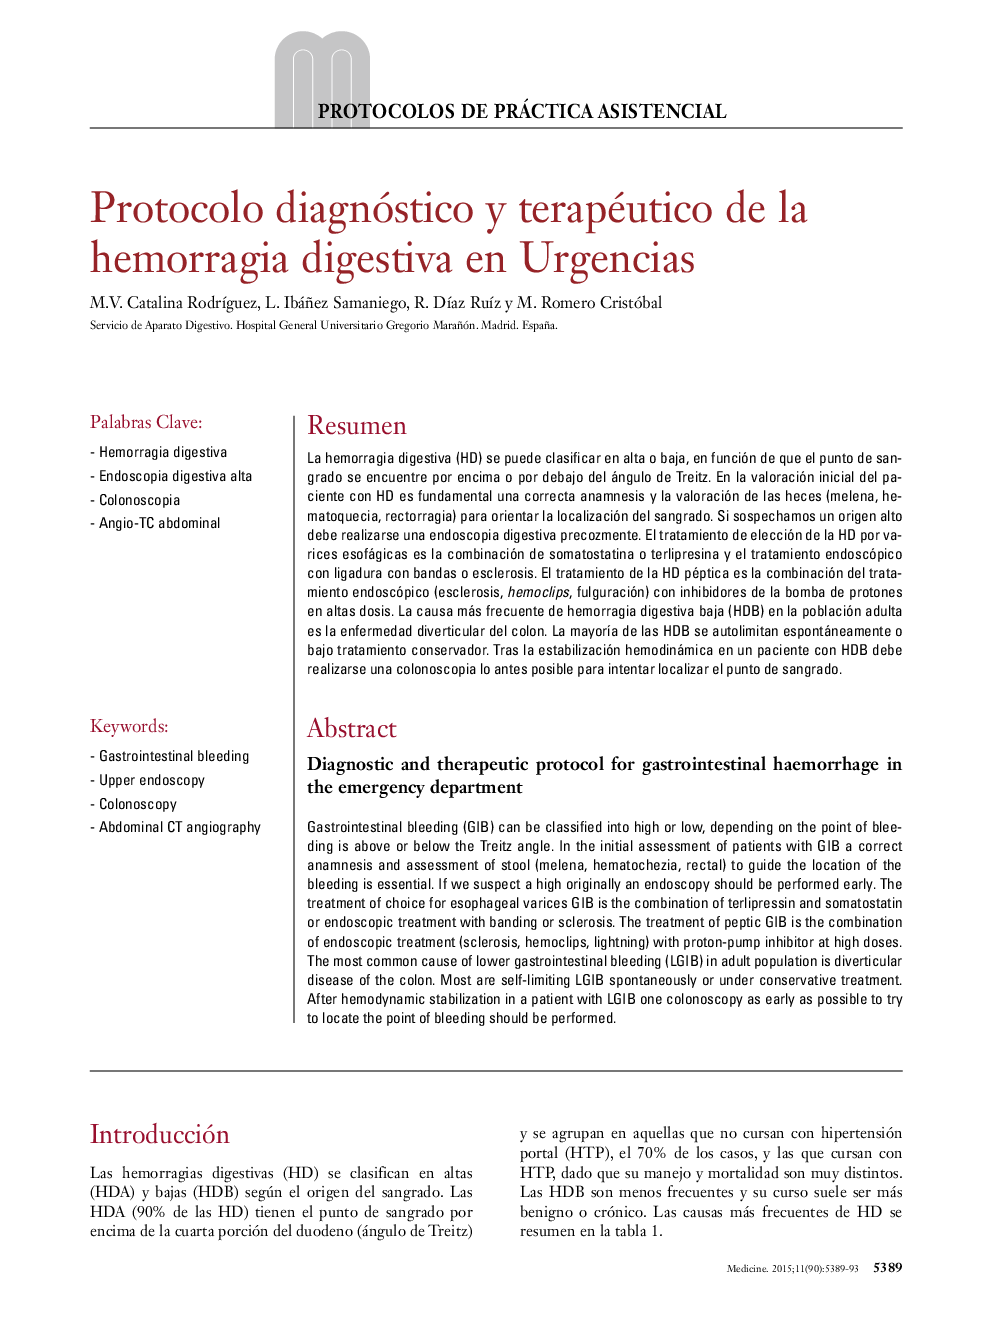 Protocolo diagnóstico y terapéutico de la hemorragia digestiva en Urgencias